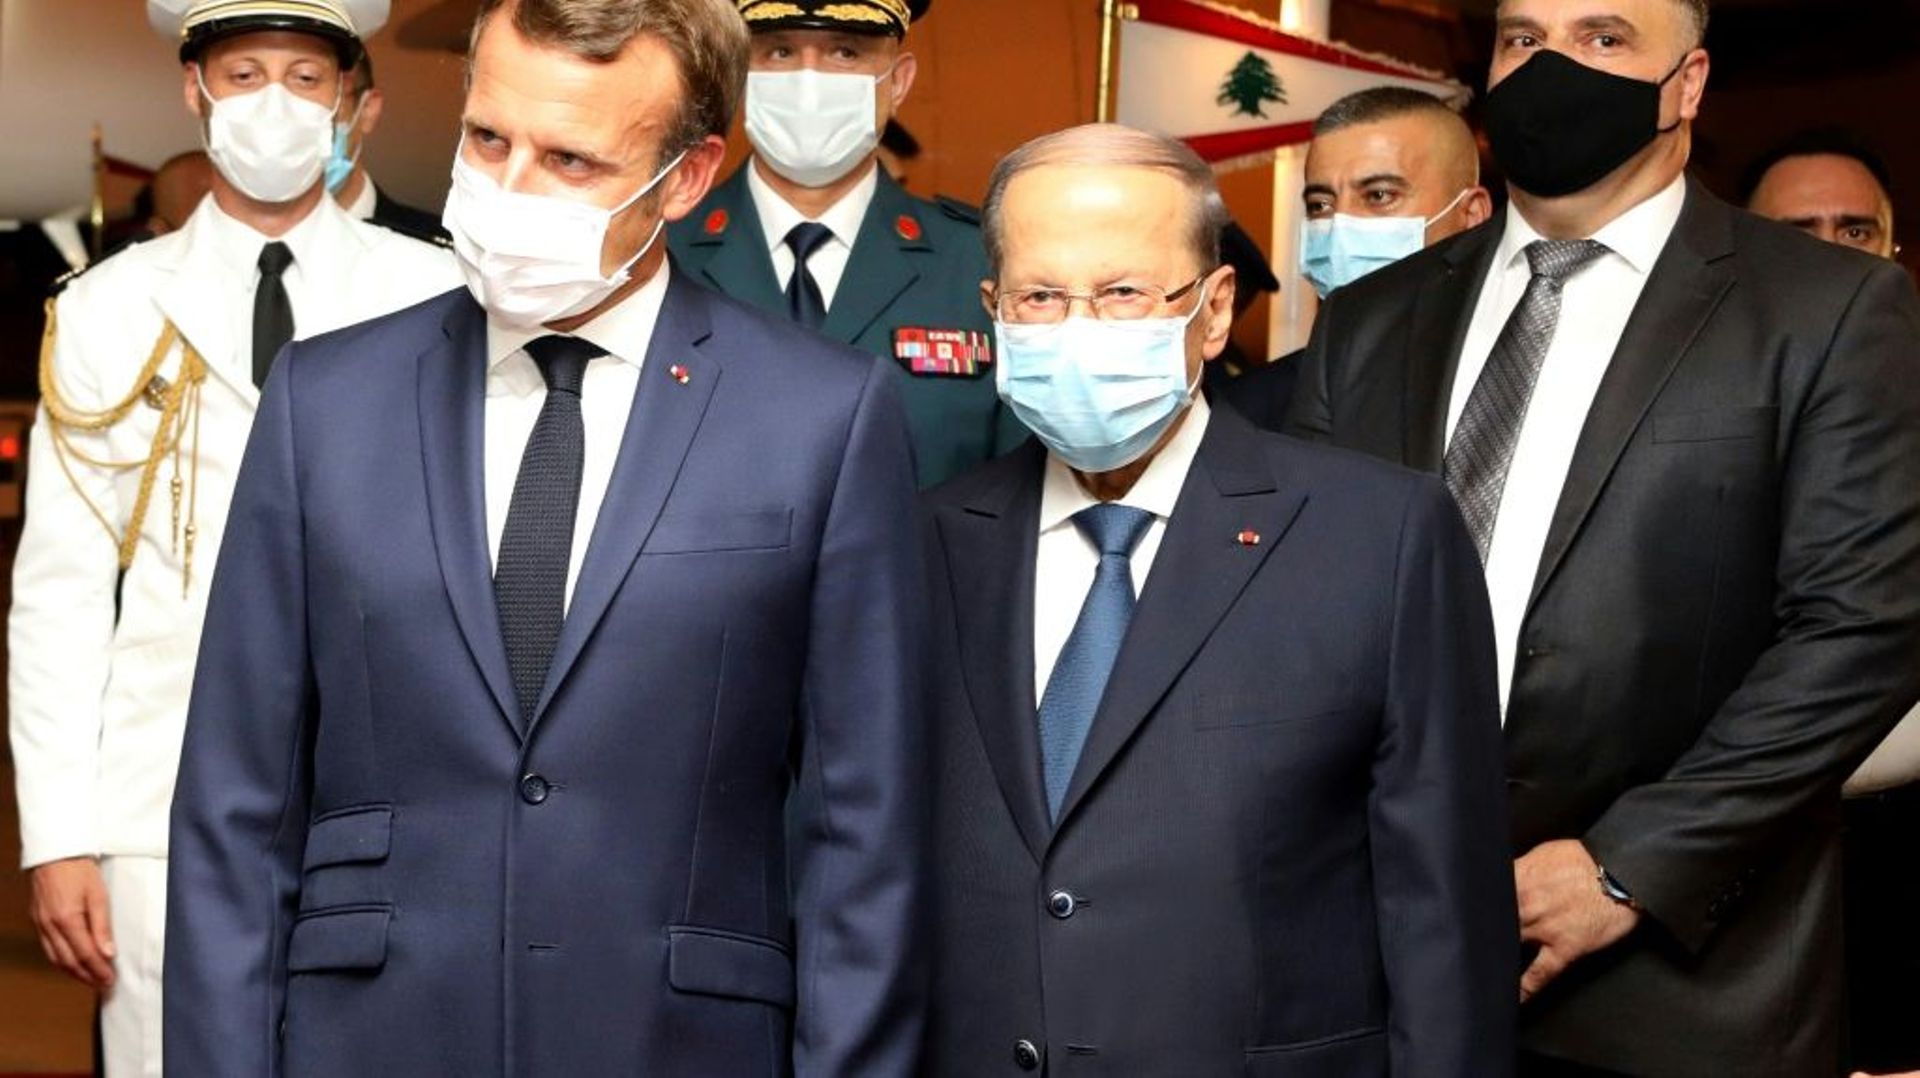 Le président français Emmanuel Macron est accueilli par son homologue libanais Michel Aoun, le 31 août 2020 à l'aéroport de Beyrouth